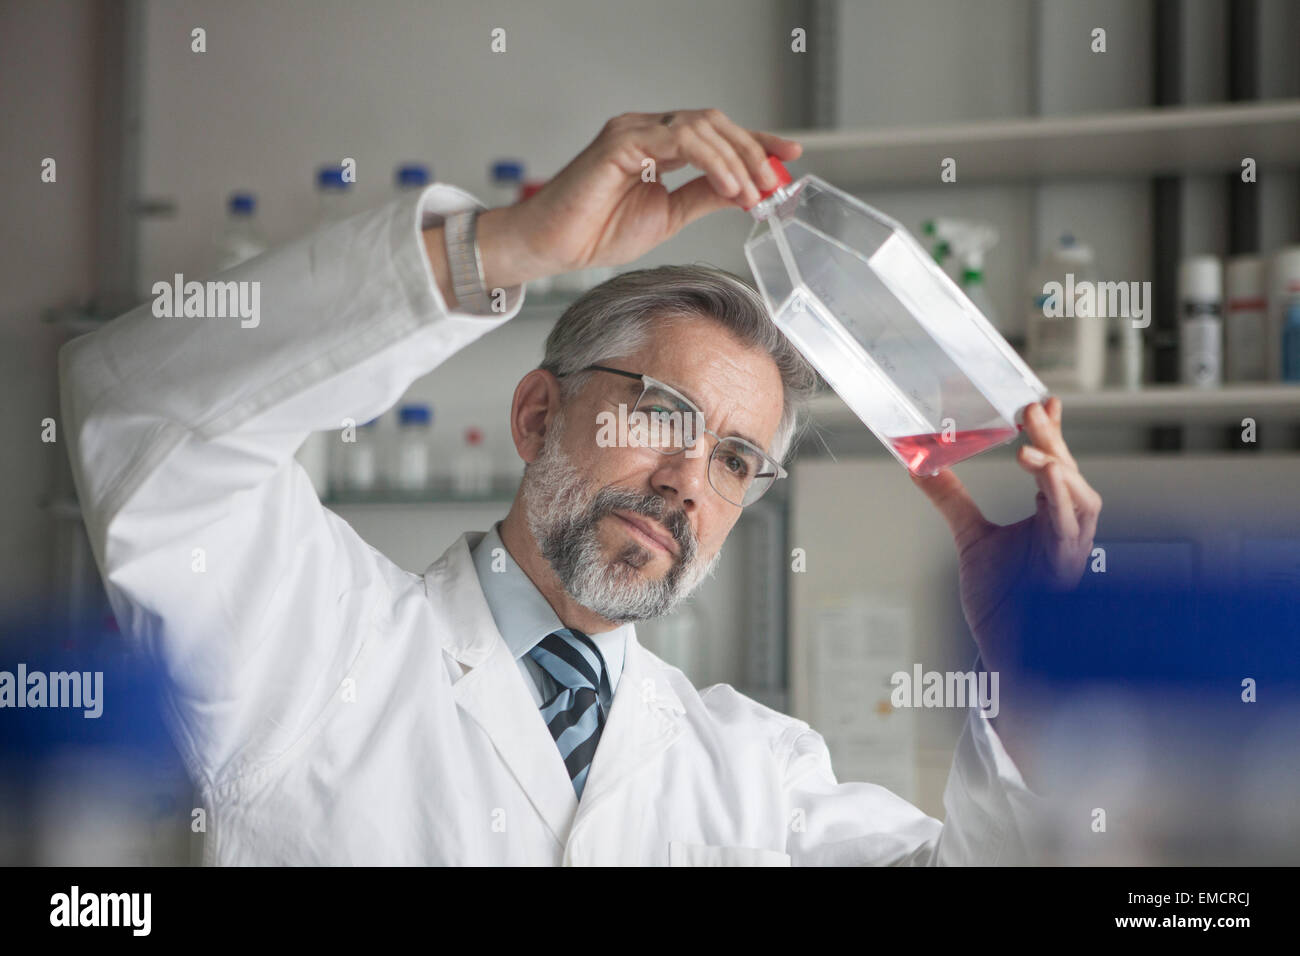 Scientist examining liquid in laboratory Stock Photo